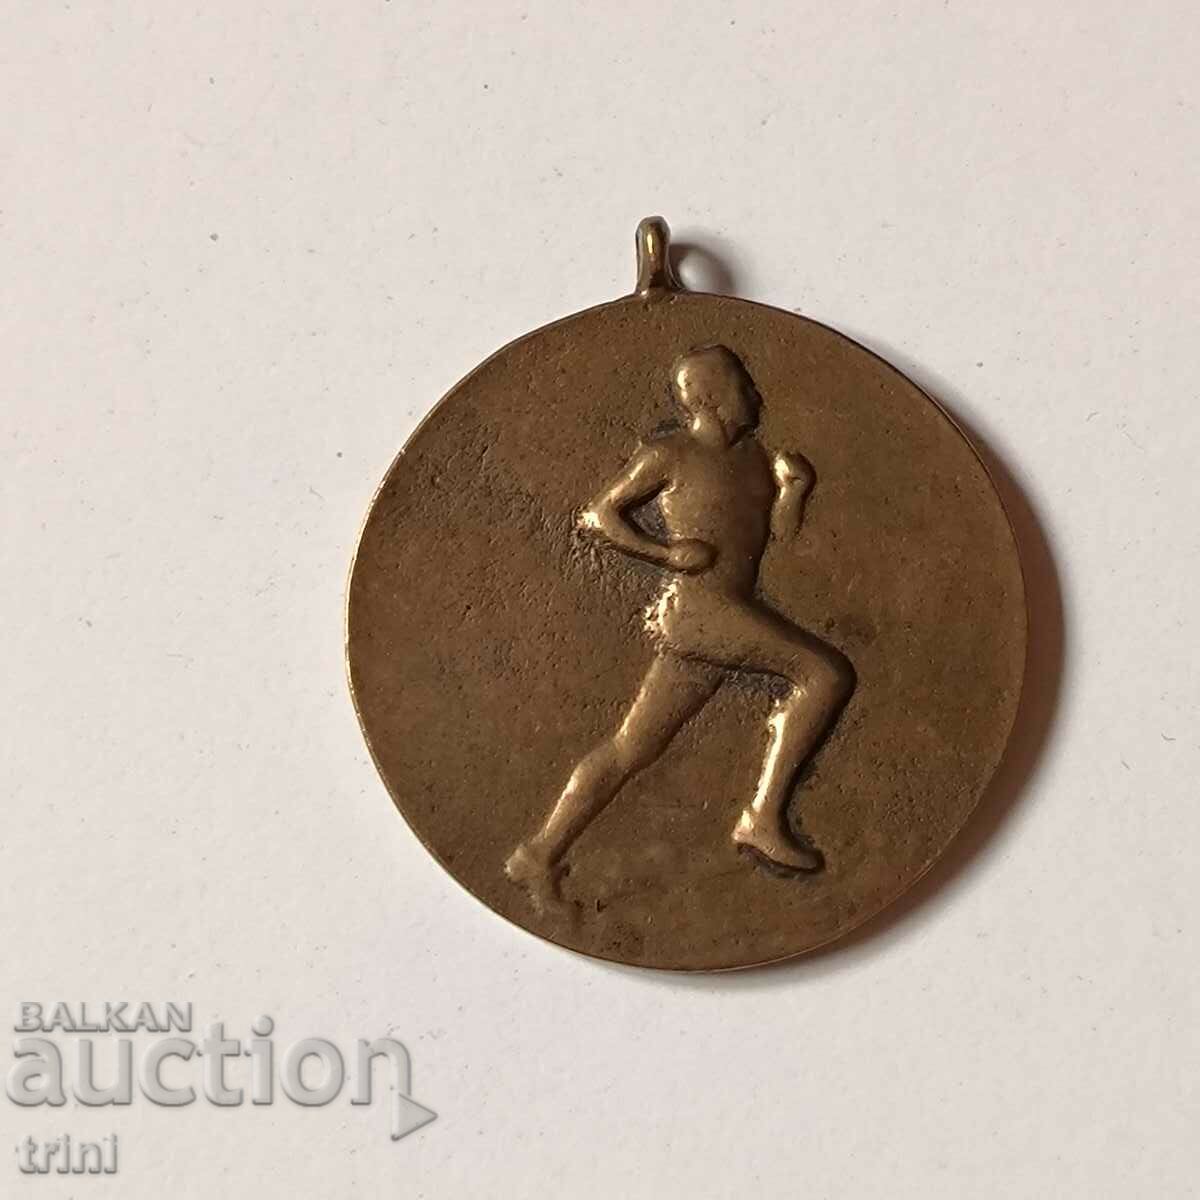 Sports medal 1951 - running